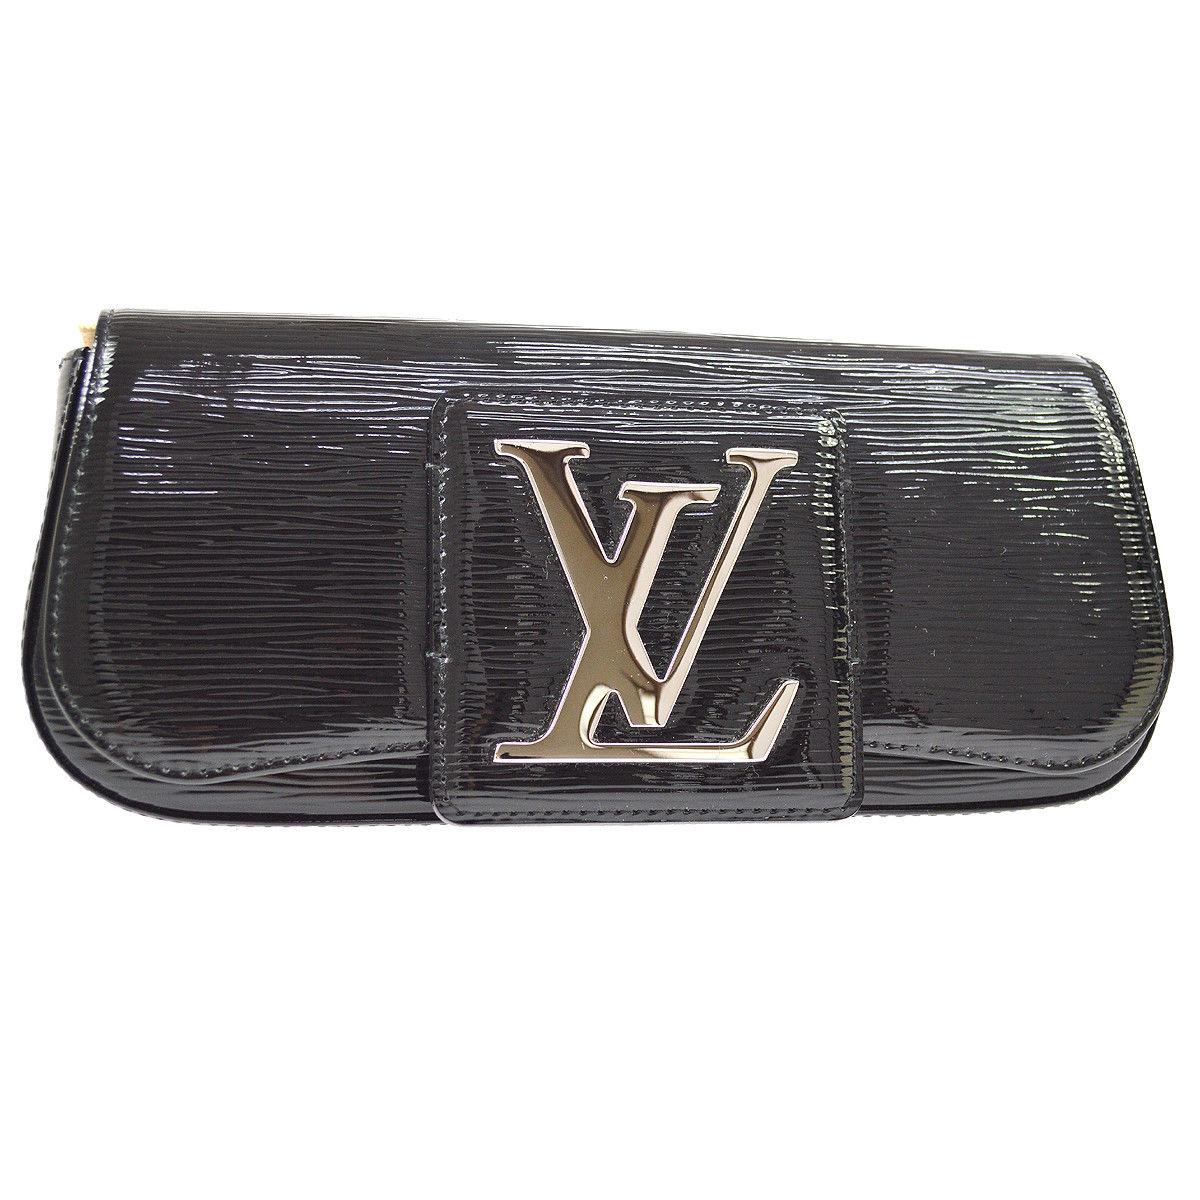 Louis Vuitton Black Patent Leather Large Silver LV Evening Clutch Flap Bag